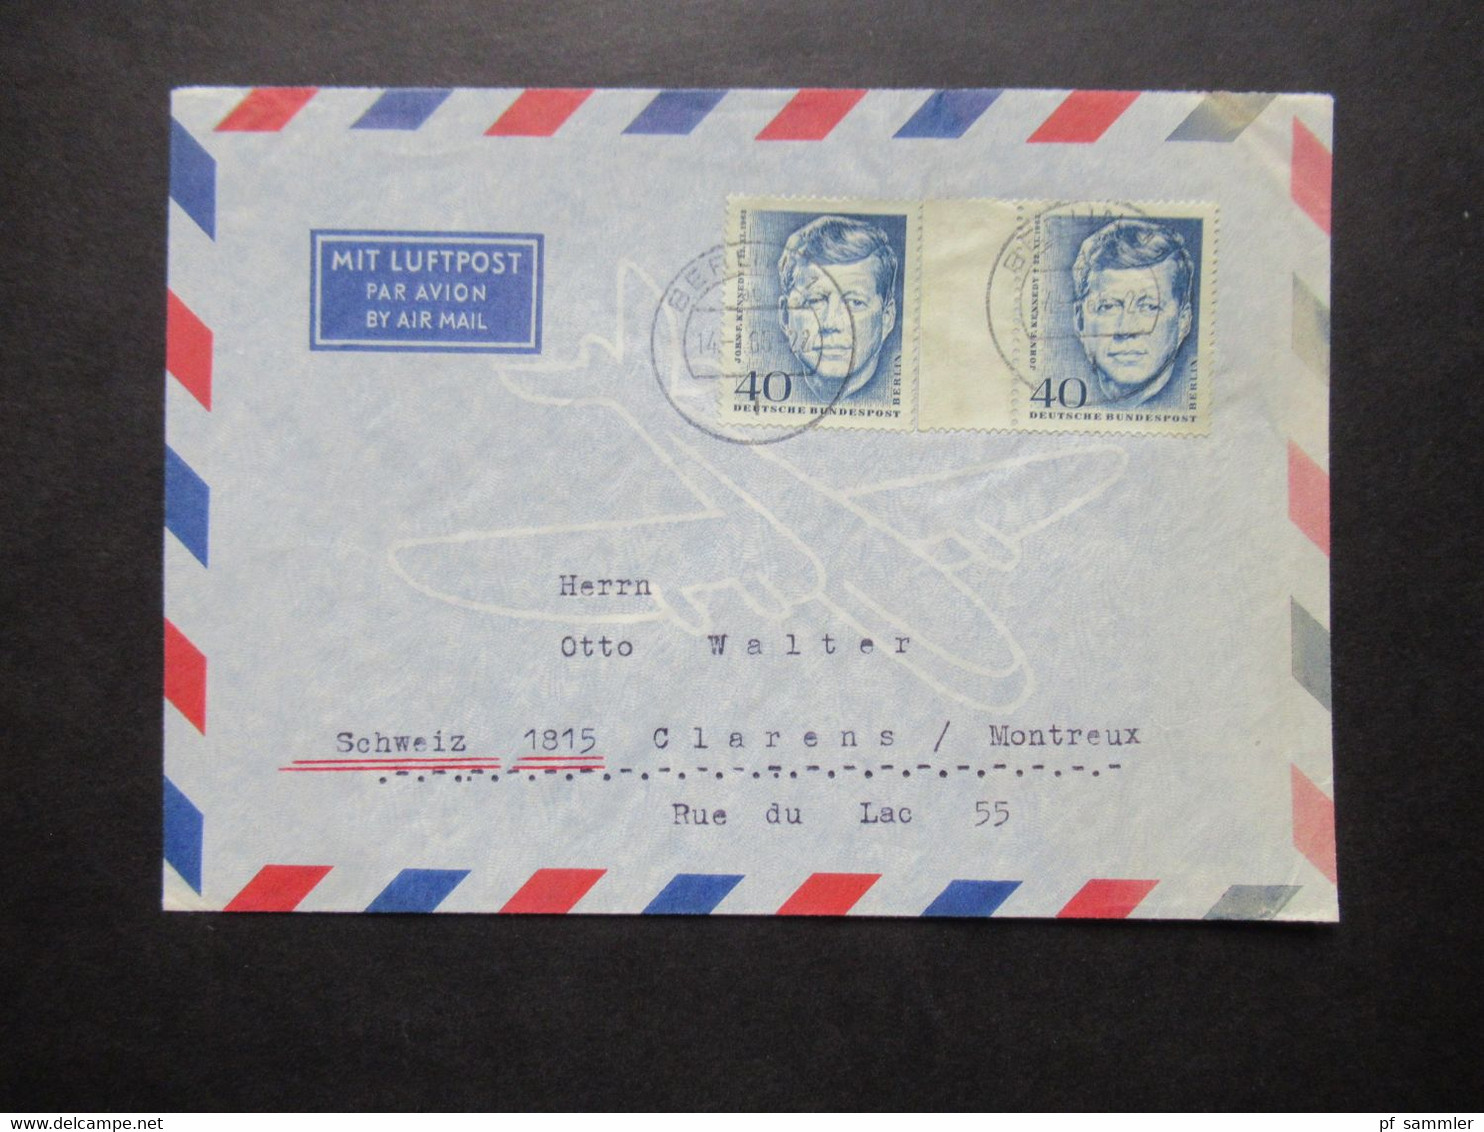 1964 Berlin (West) John F. Kennedy Nr.241 (2) MeF Auslandsbrief Mit Luftpost Berlin - Clarens Montreux Schweiz - Lettres & Documents